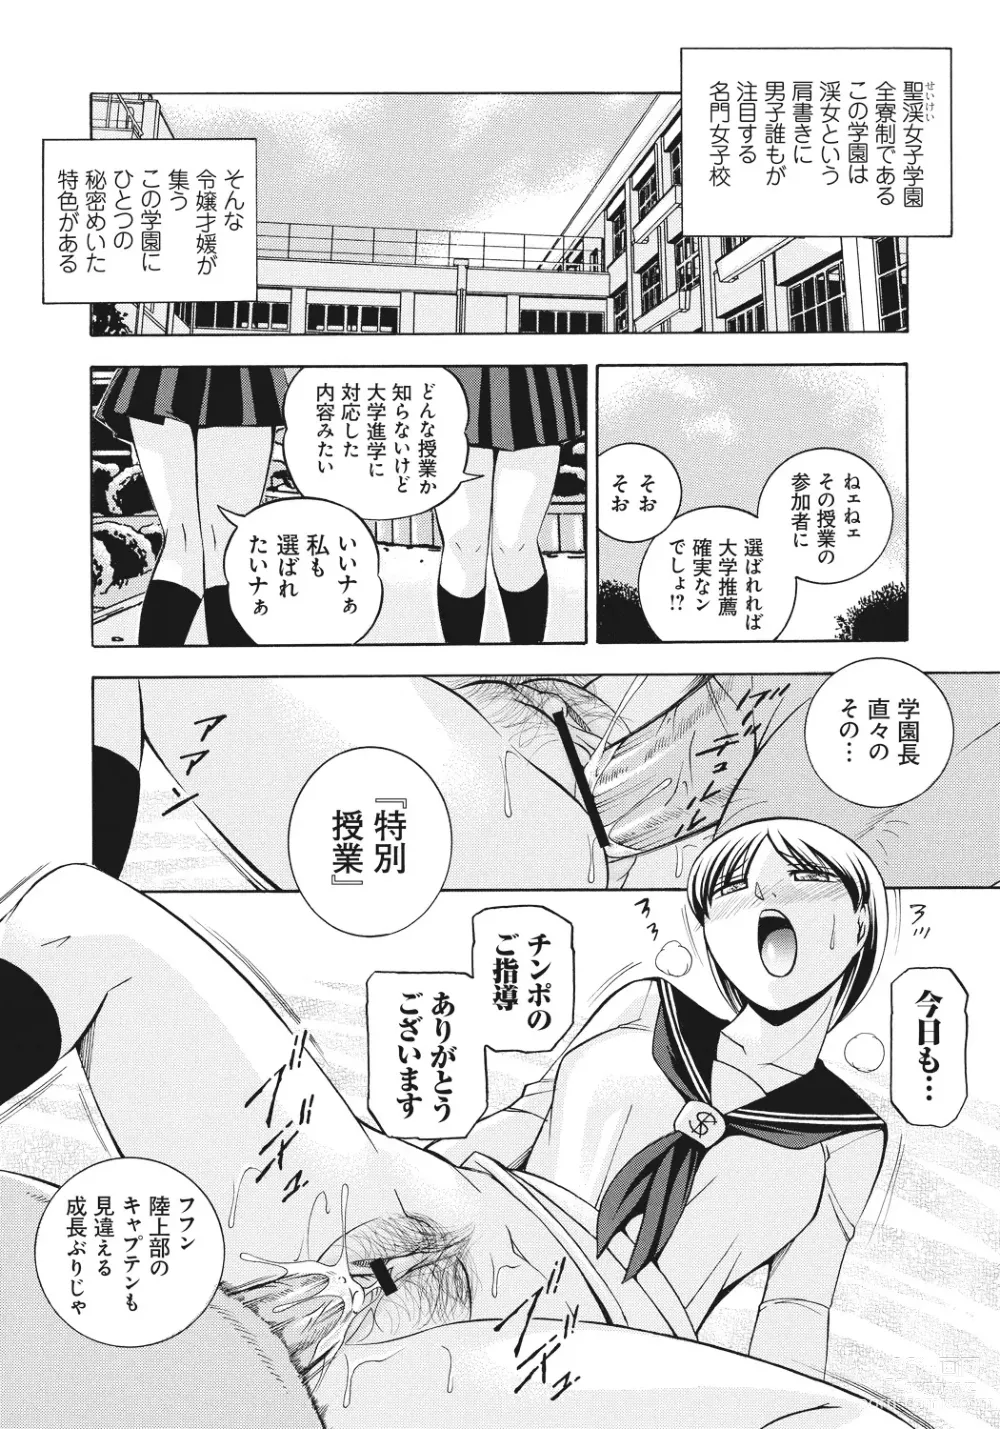 Page 5 of manga Student Council President Mitsuki